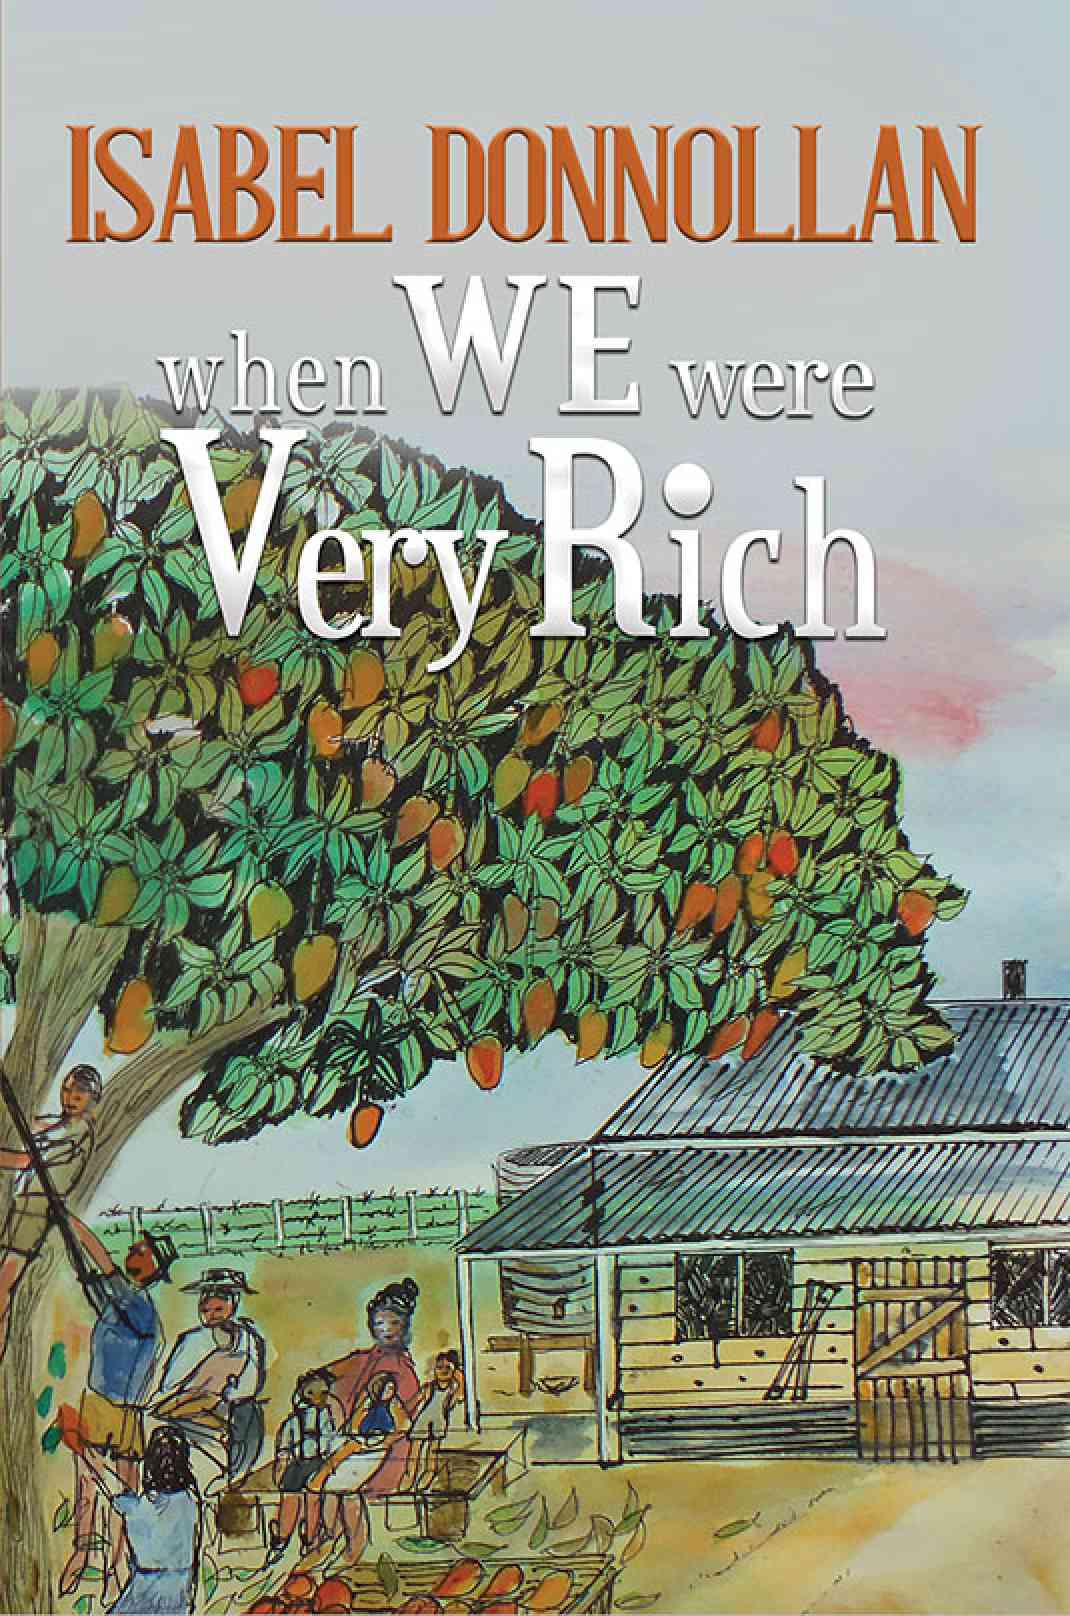 Nicola Davison Featured Isabel Donnollan, the Author of ‘When We Were Very Rich’